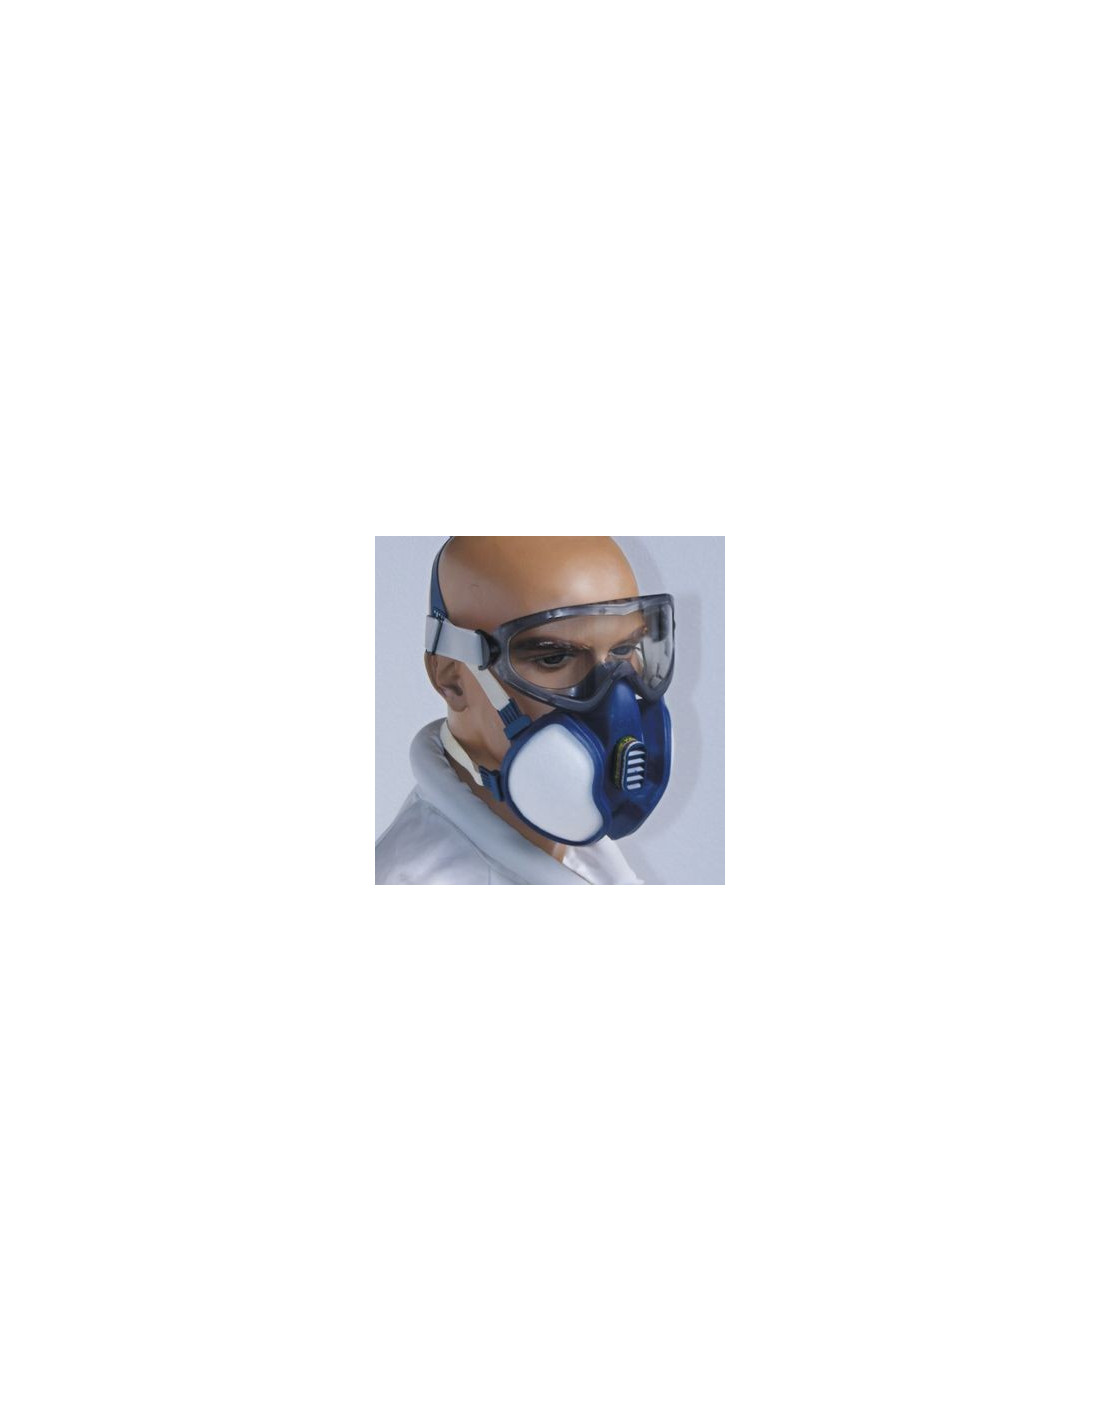 Respirateur masque-facial, KIT avec lunettes-utile pour les